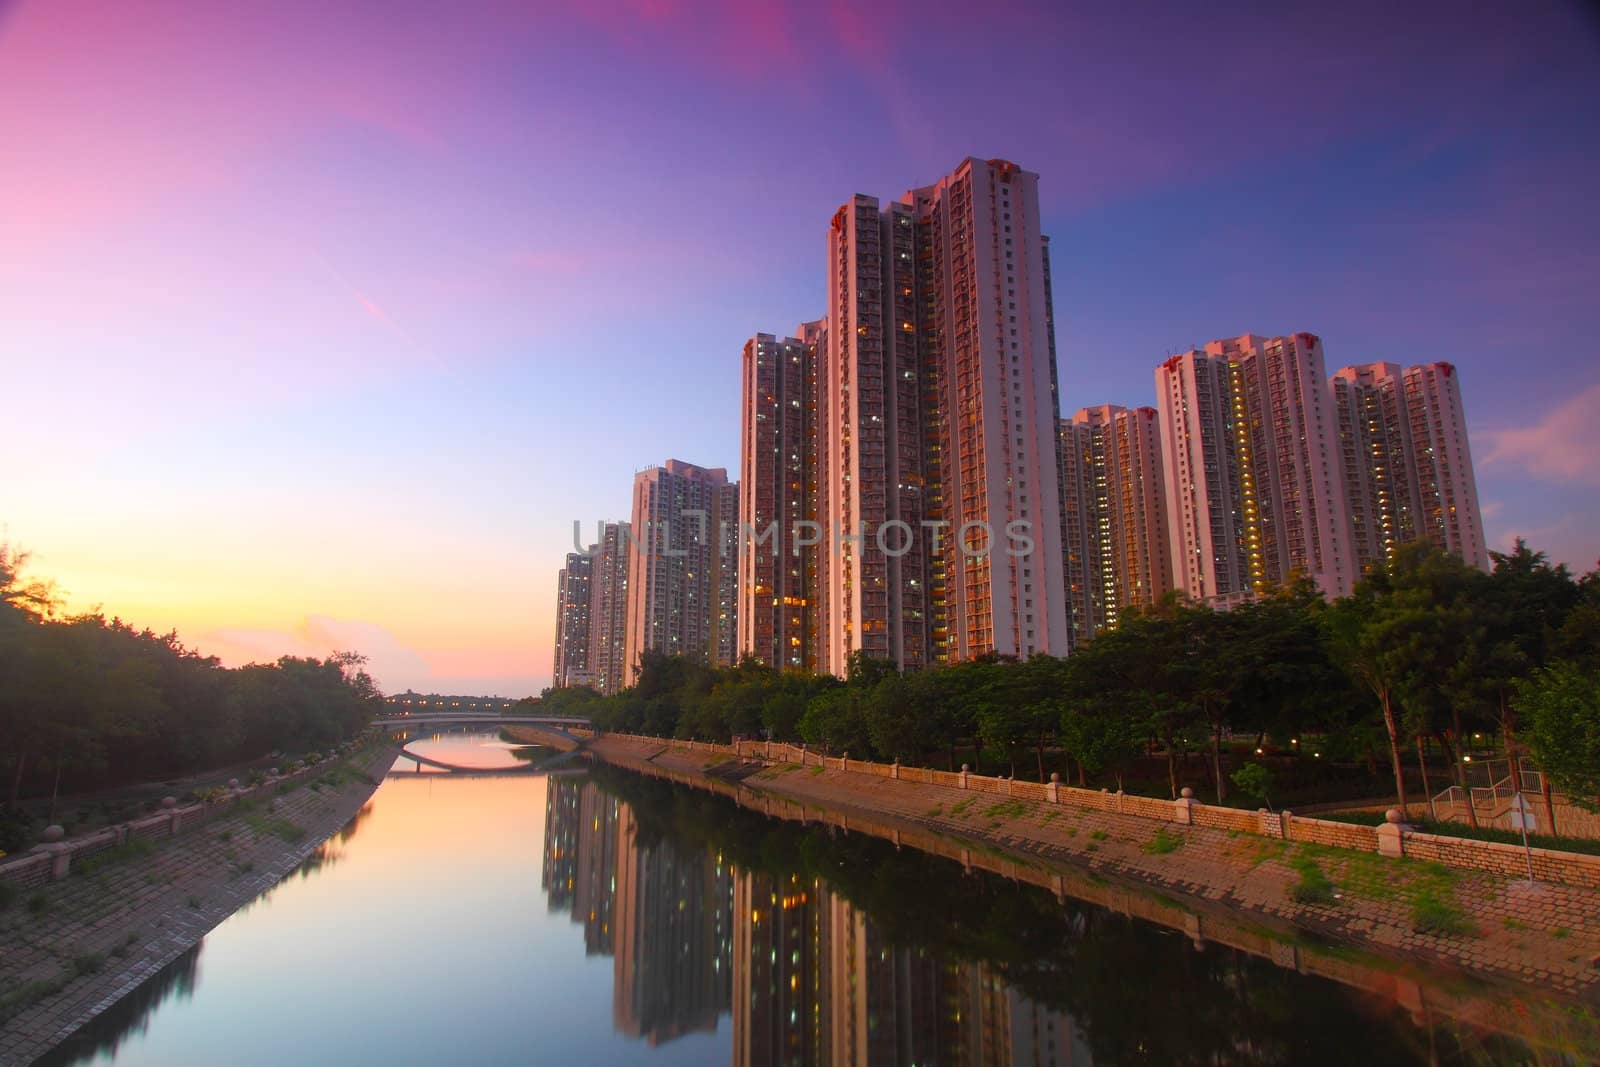 Tin Shui Wai downtown at sunset in Hong Kong by kawing921